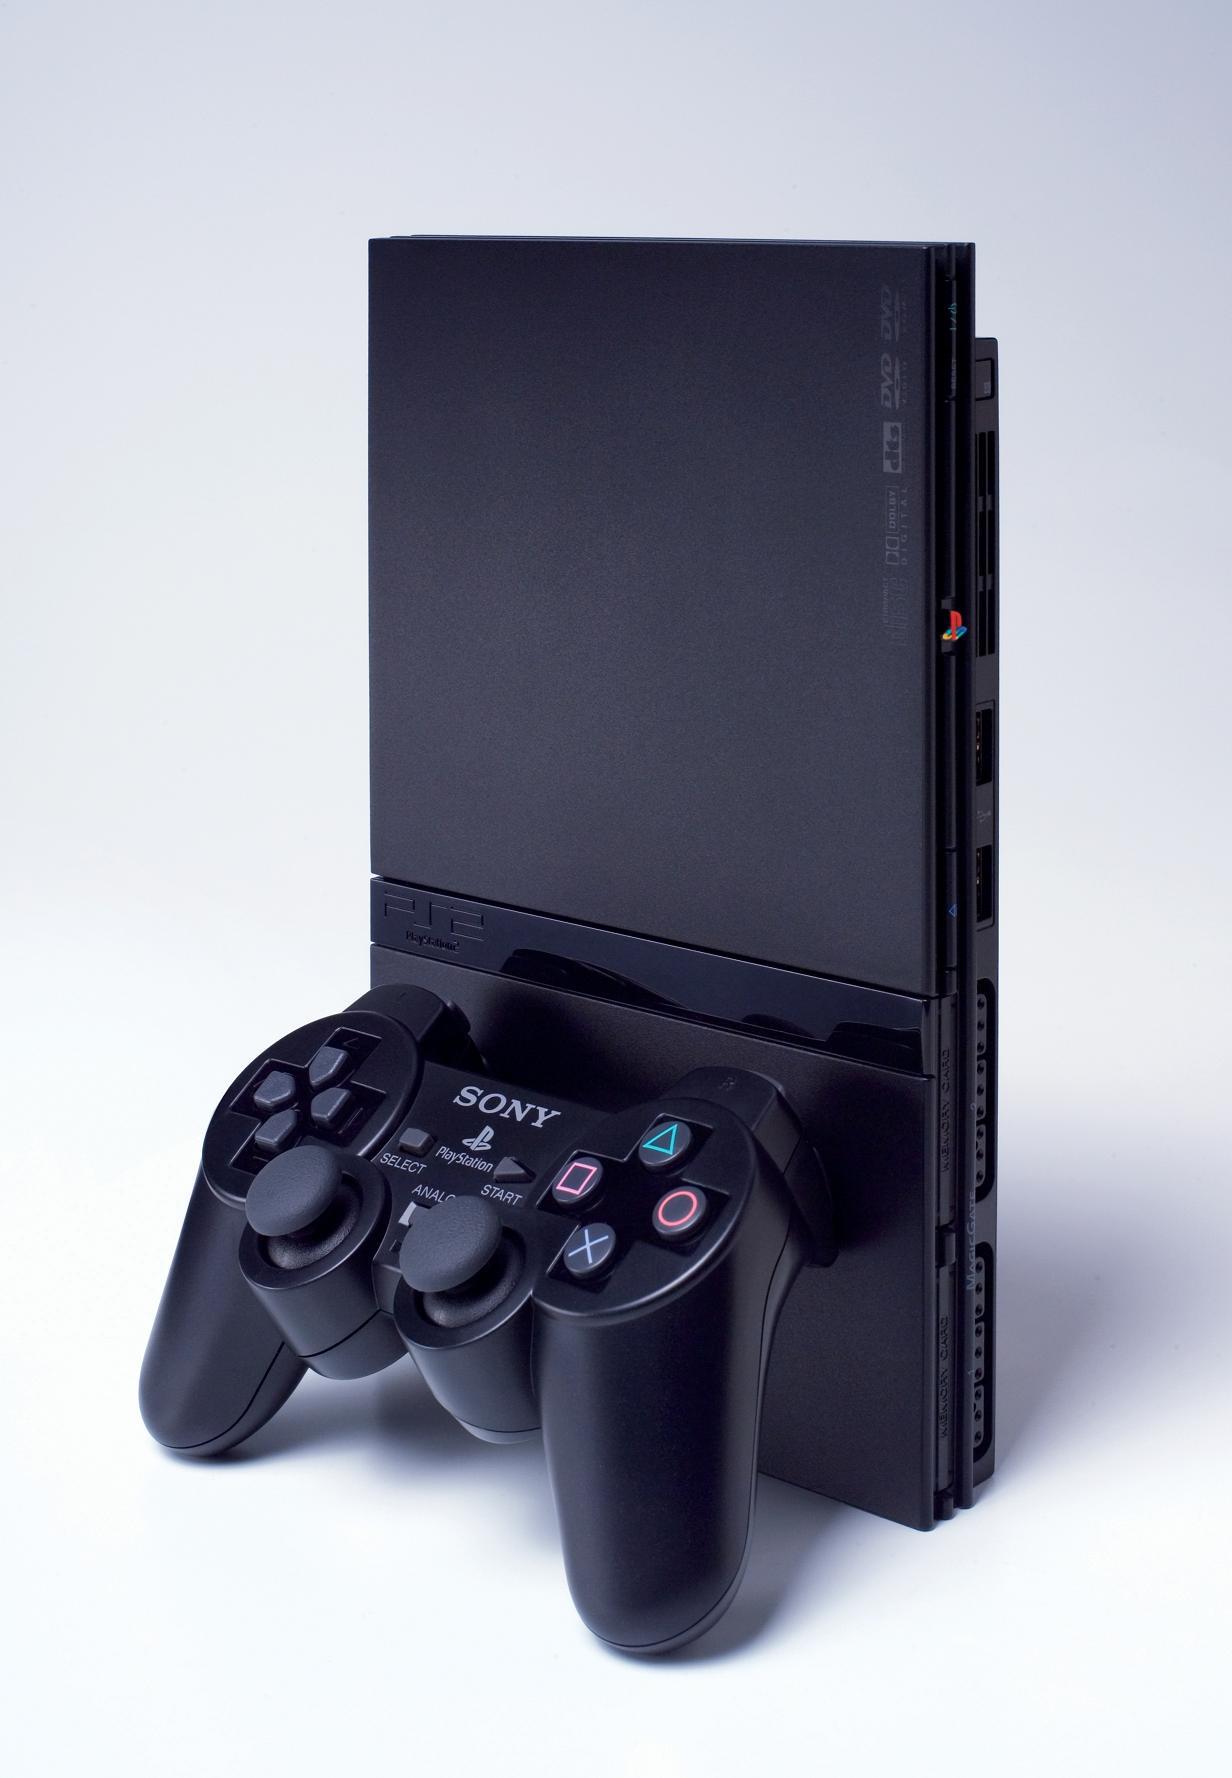 Sony espera derribar Wii con la rebaja de Playstation 2 - Meristation